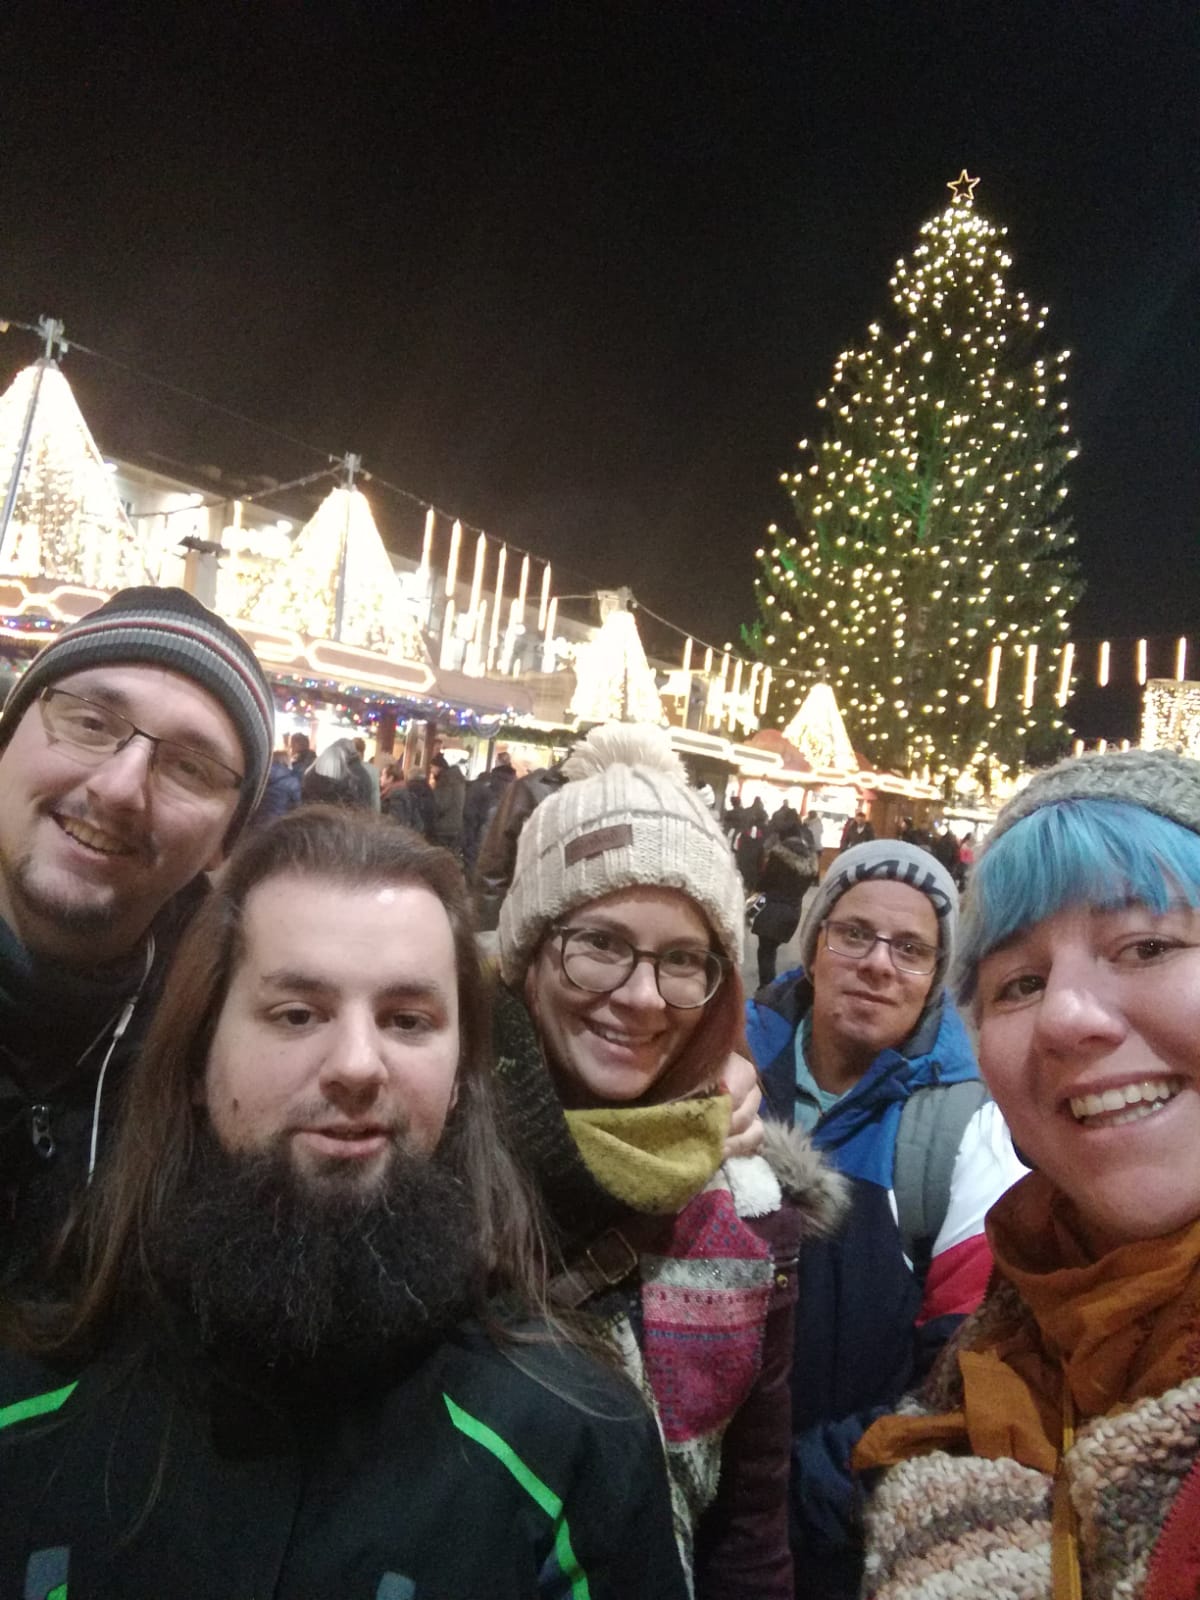 Am wunderschönen Weihnachtsmarkt in Linz